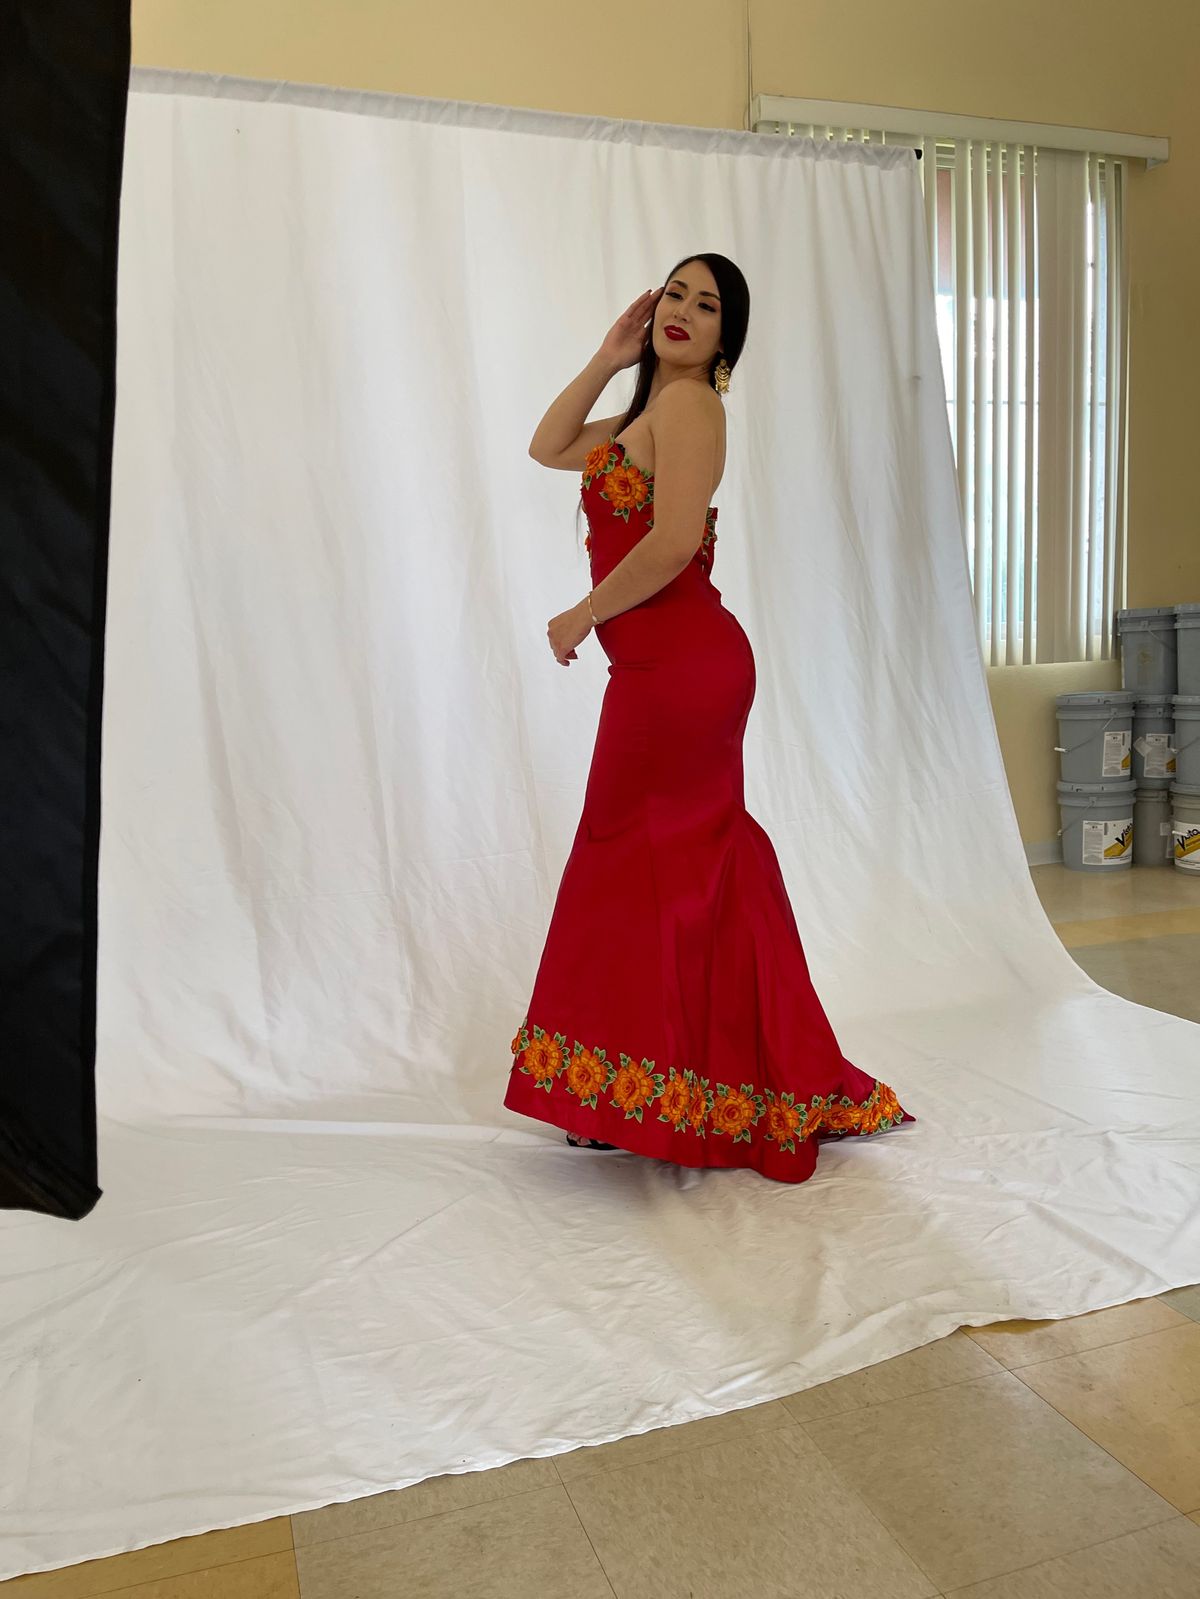 Ofelia calderon dress designer Size M Wedding Guest Strapless Red Mermaid Dress on Queenly